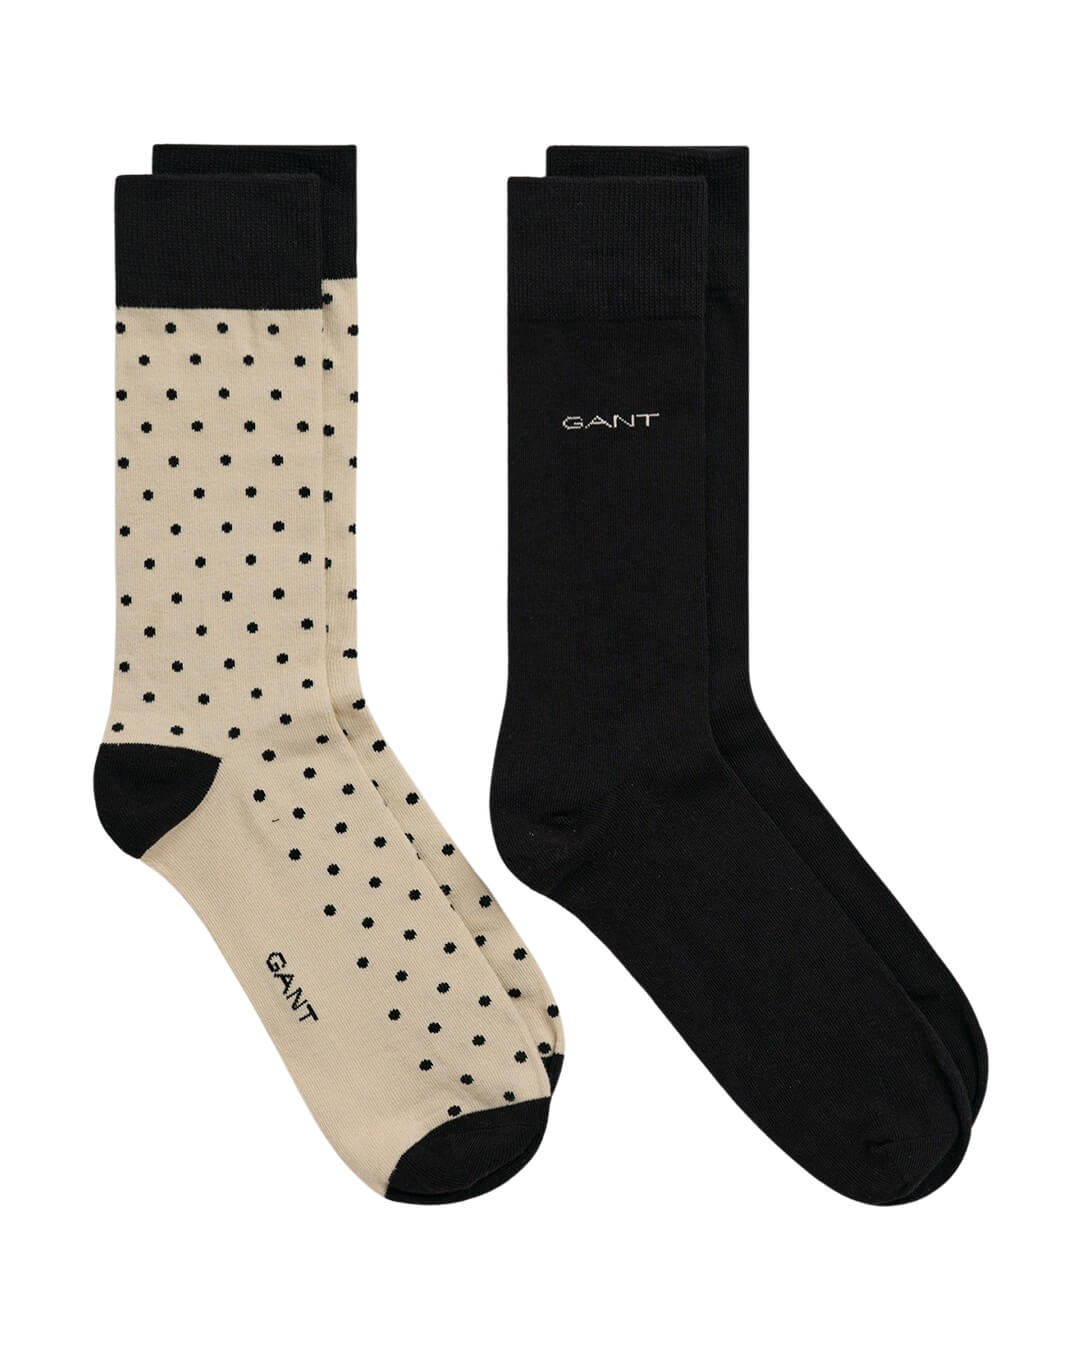 Gant Socks Gant Beige 2-Pack Solid & Dot Socks